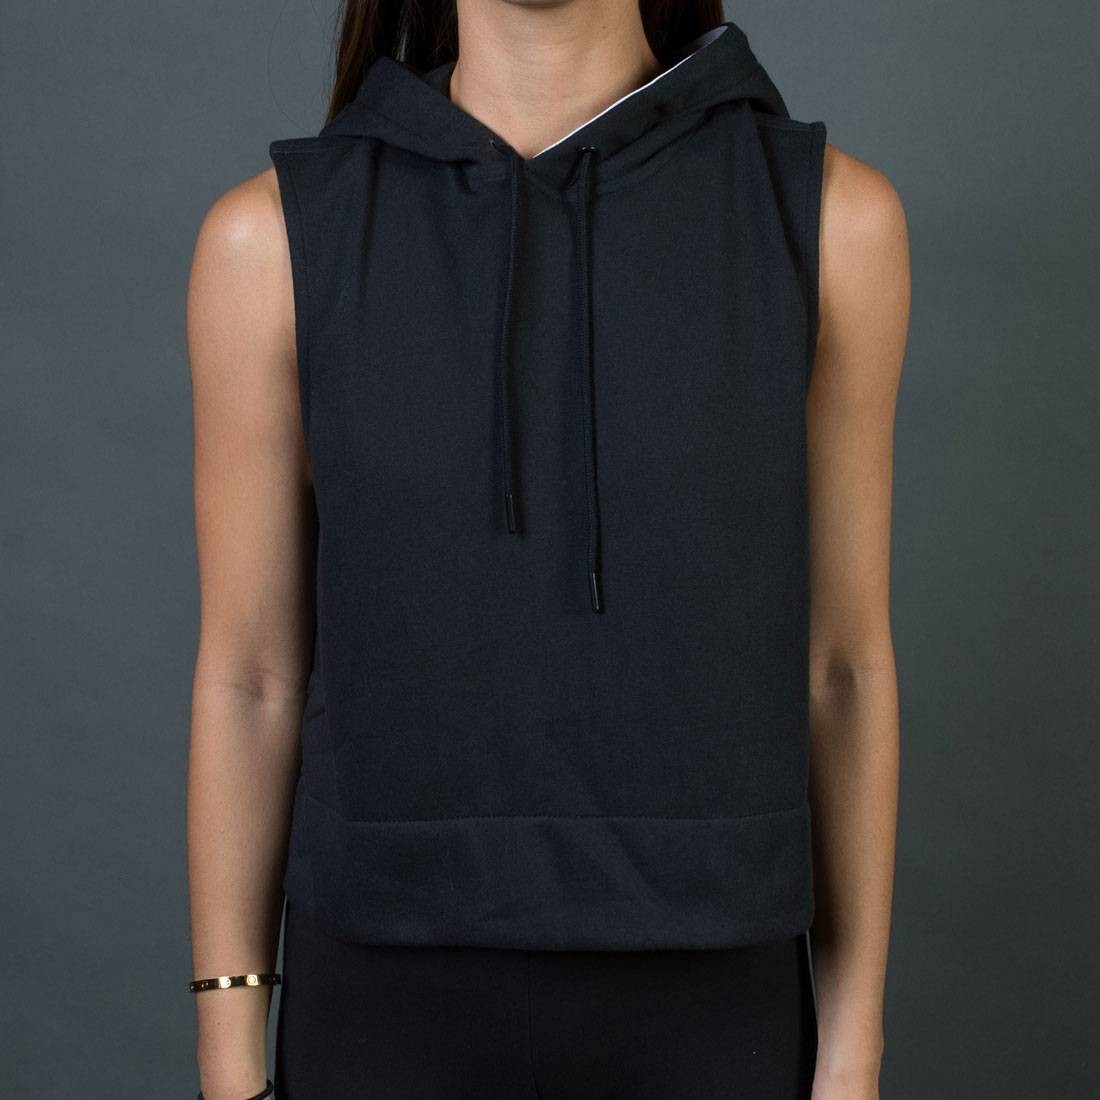 Buy Black Sweatshirt & Hoodies for Women by BESIMPLE Online